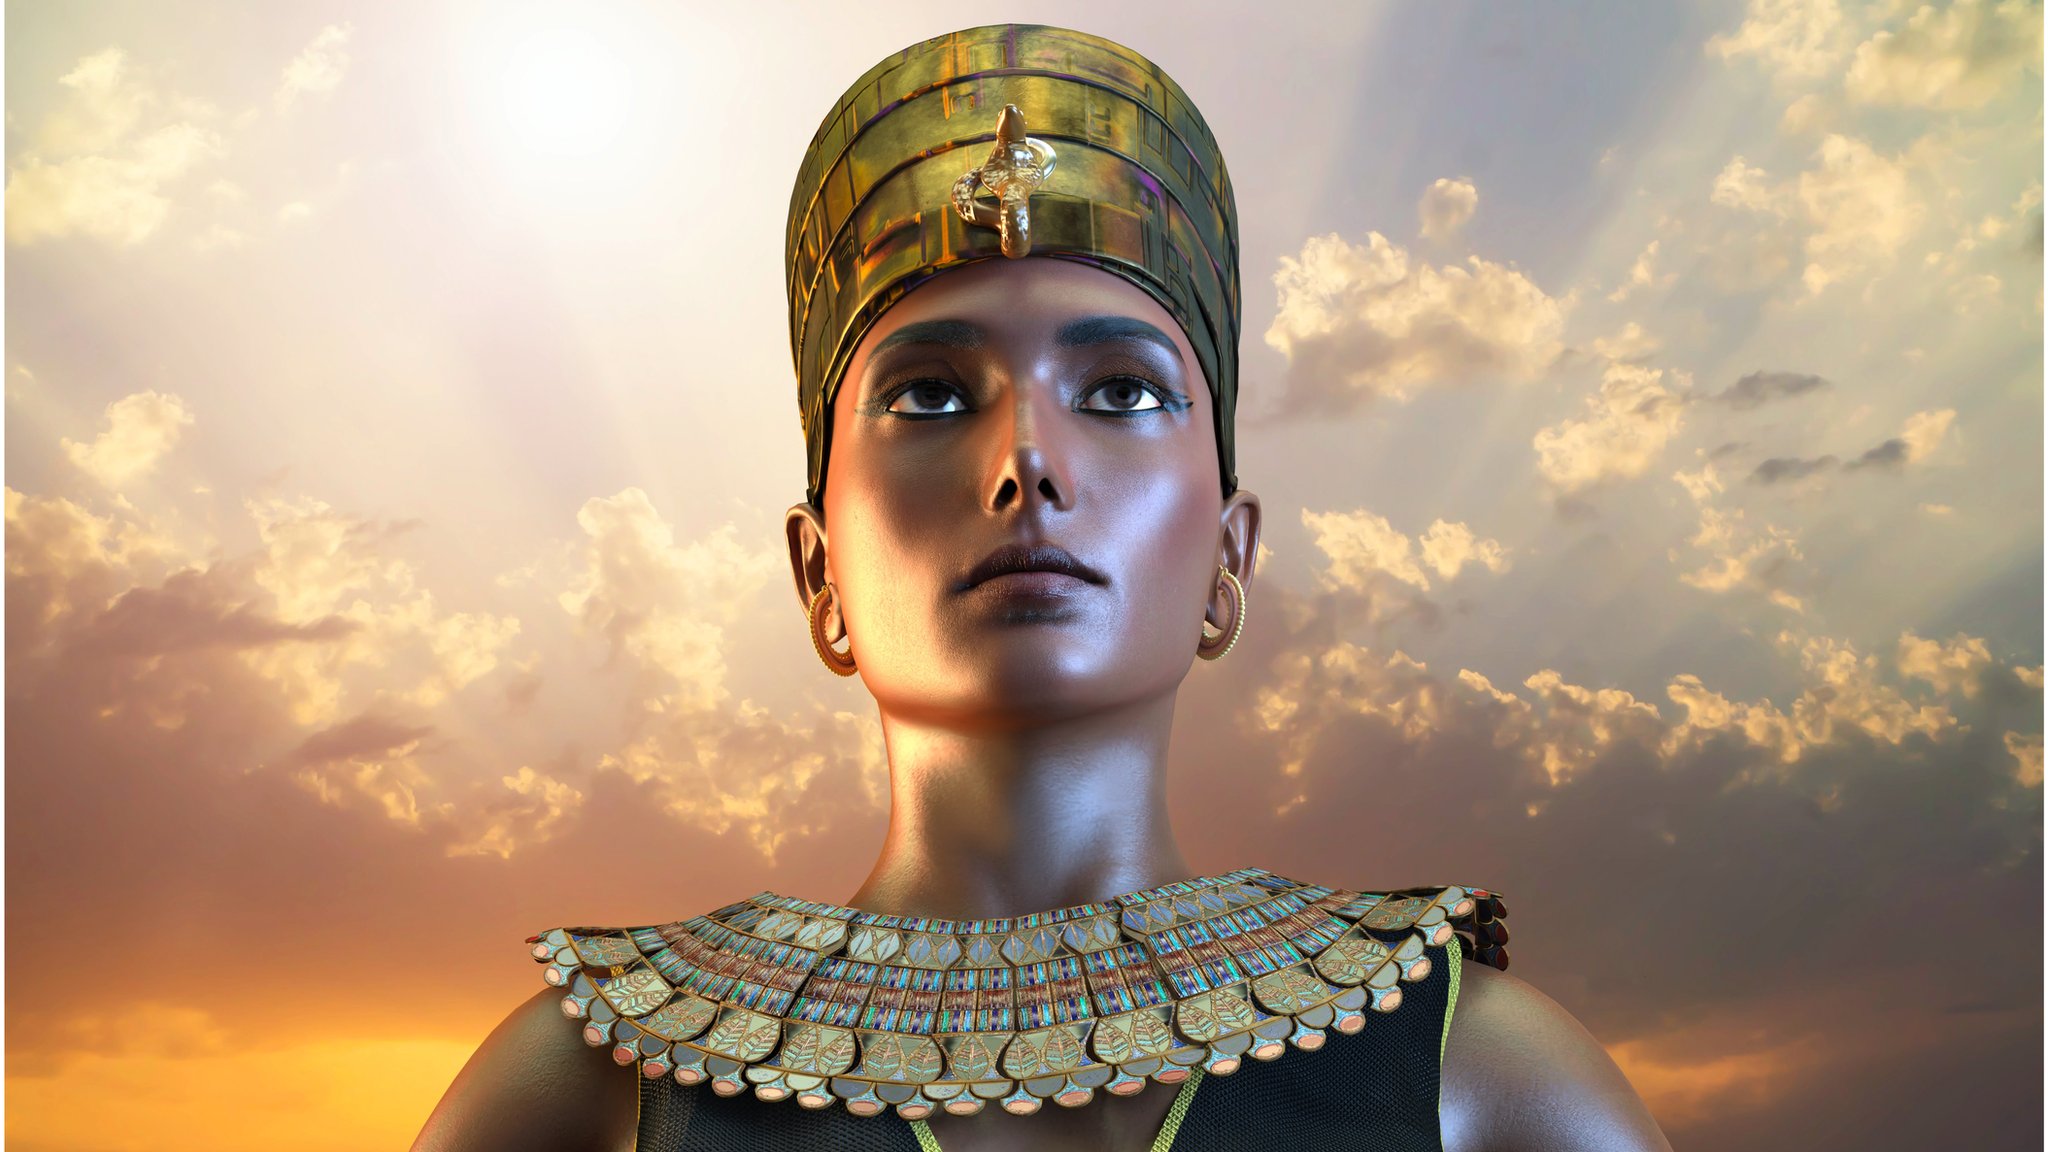 مصر تنتج الفيلم الوثائقي الخاص بها عن الملكة كليوباترا